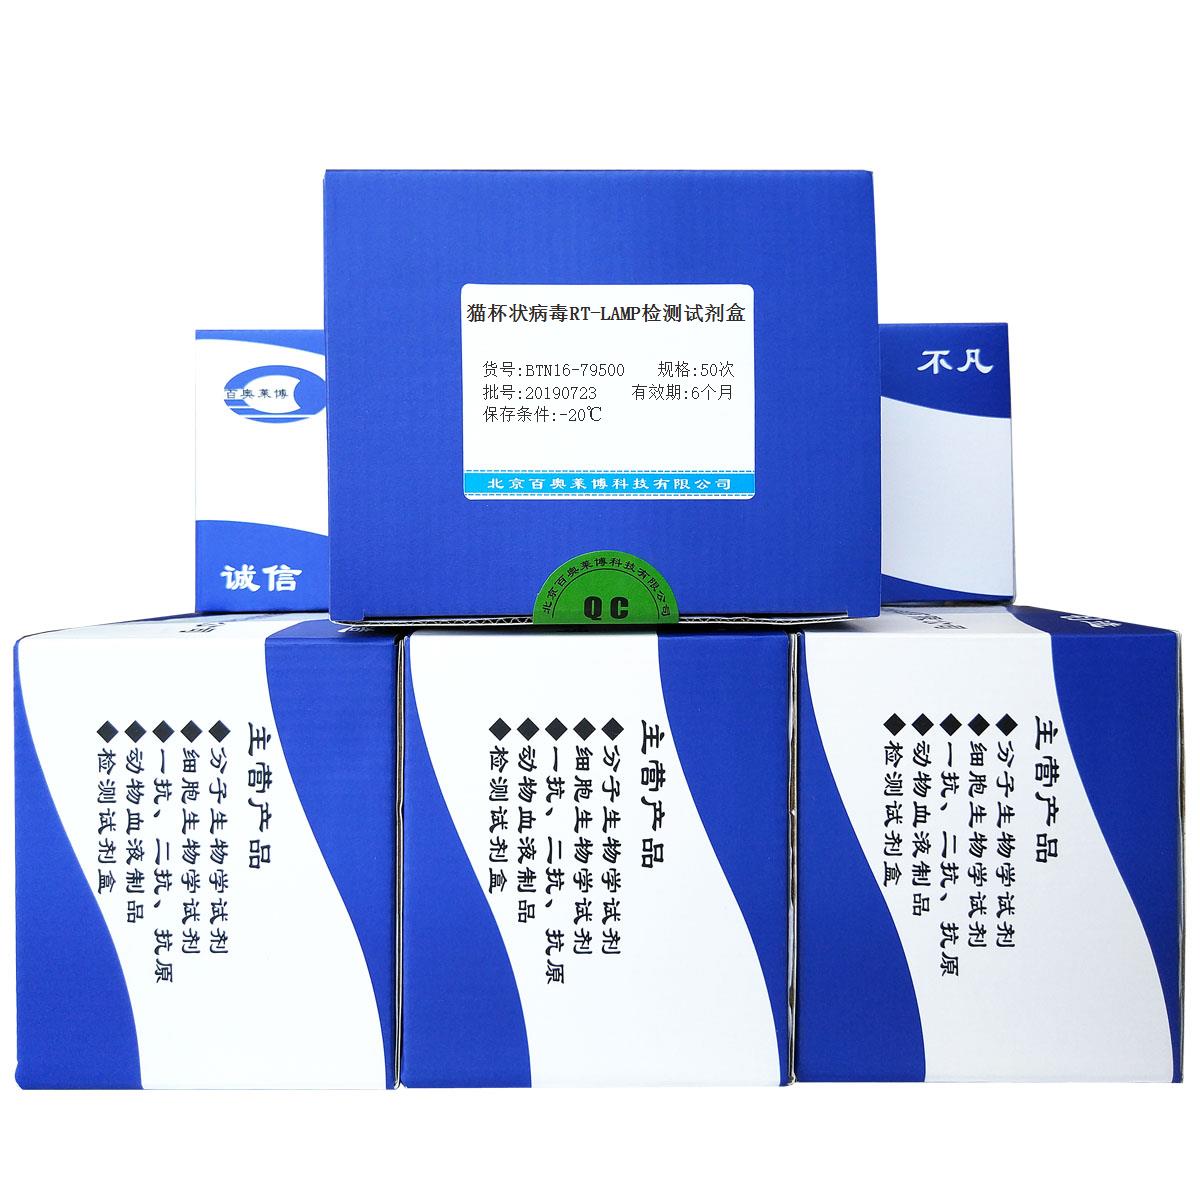 猫杯状病毒RT-LAMP检测试剂盒北京品牌